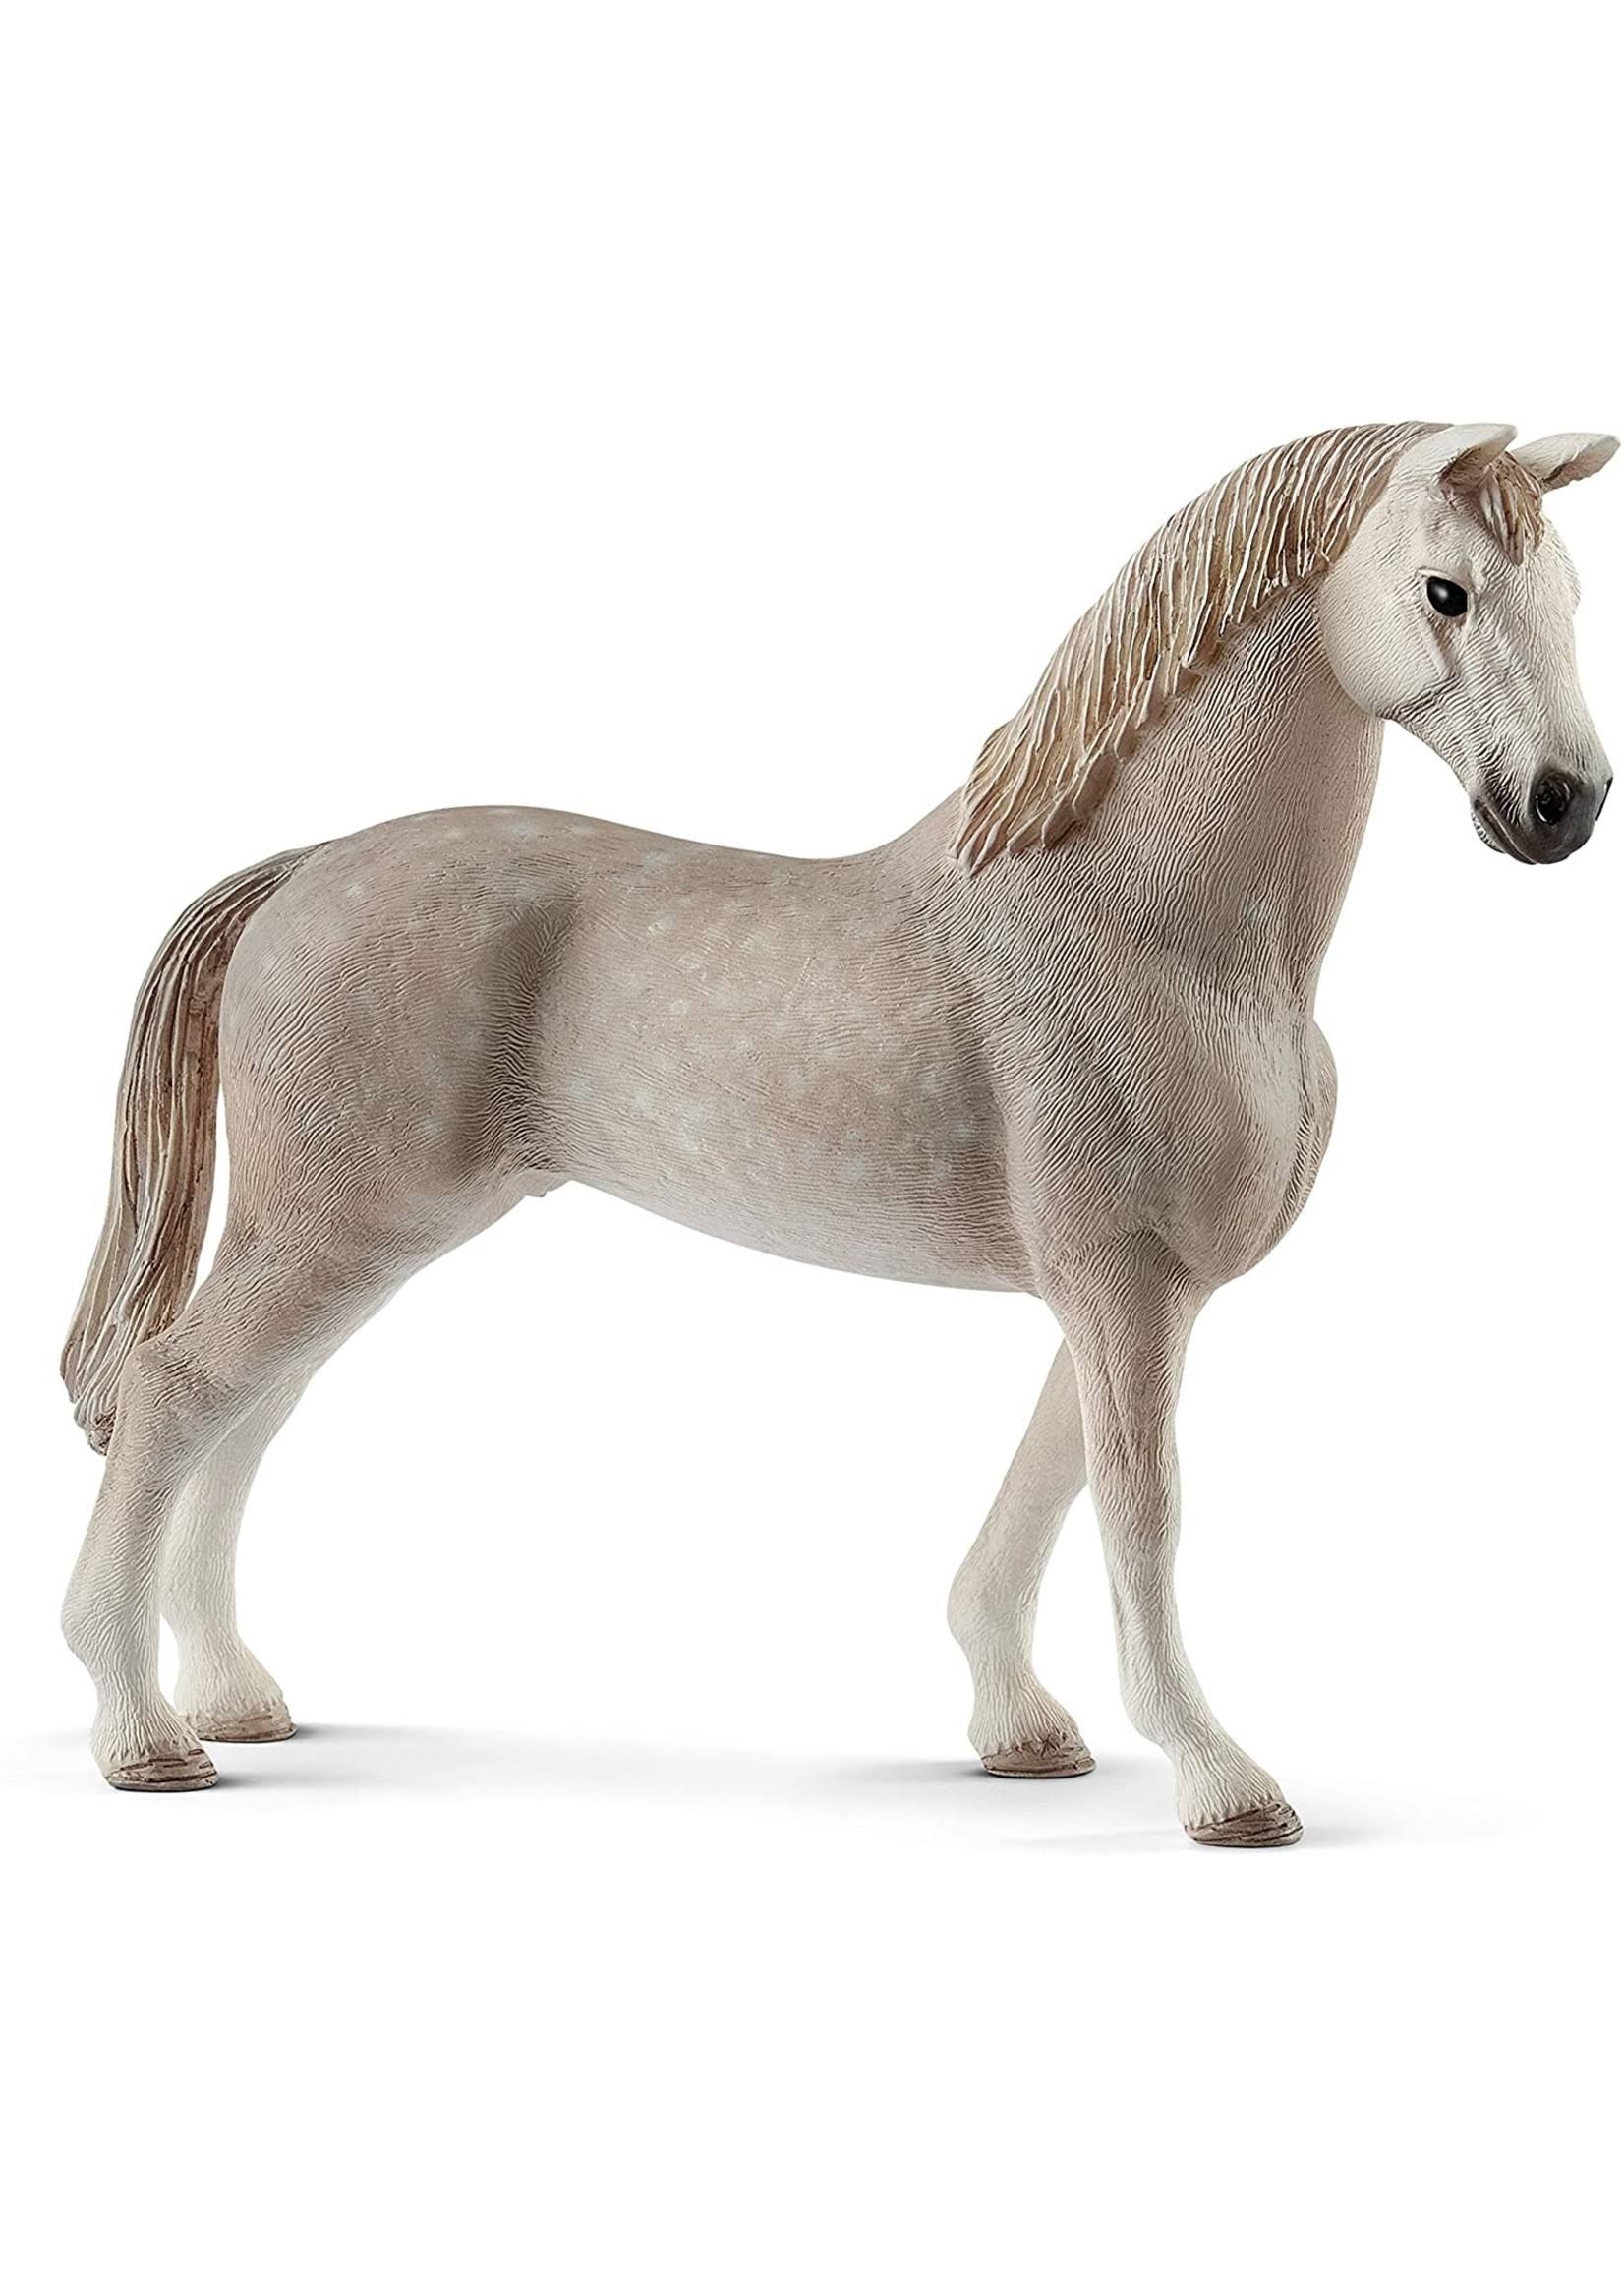 Schleich Holsteiner Gelding Horse Figurine